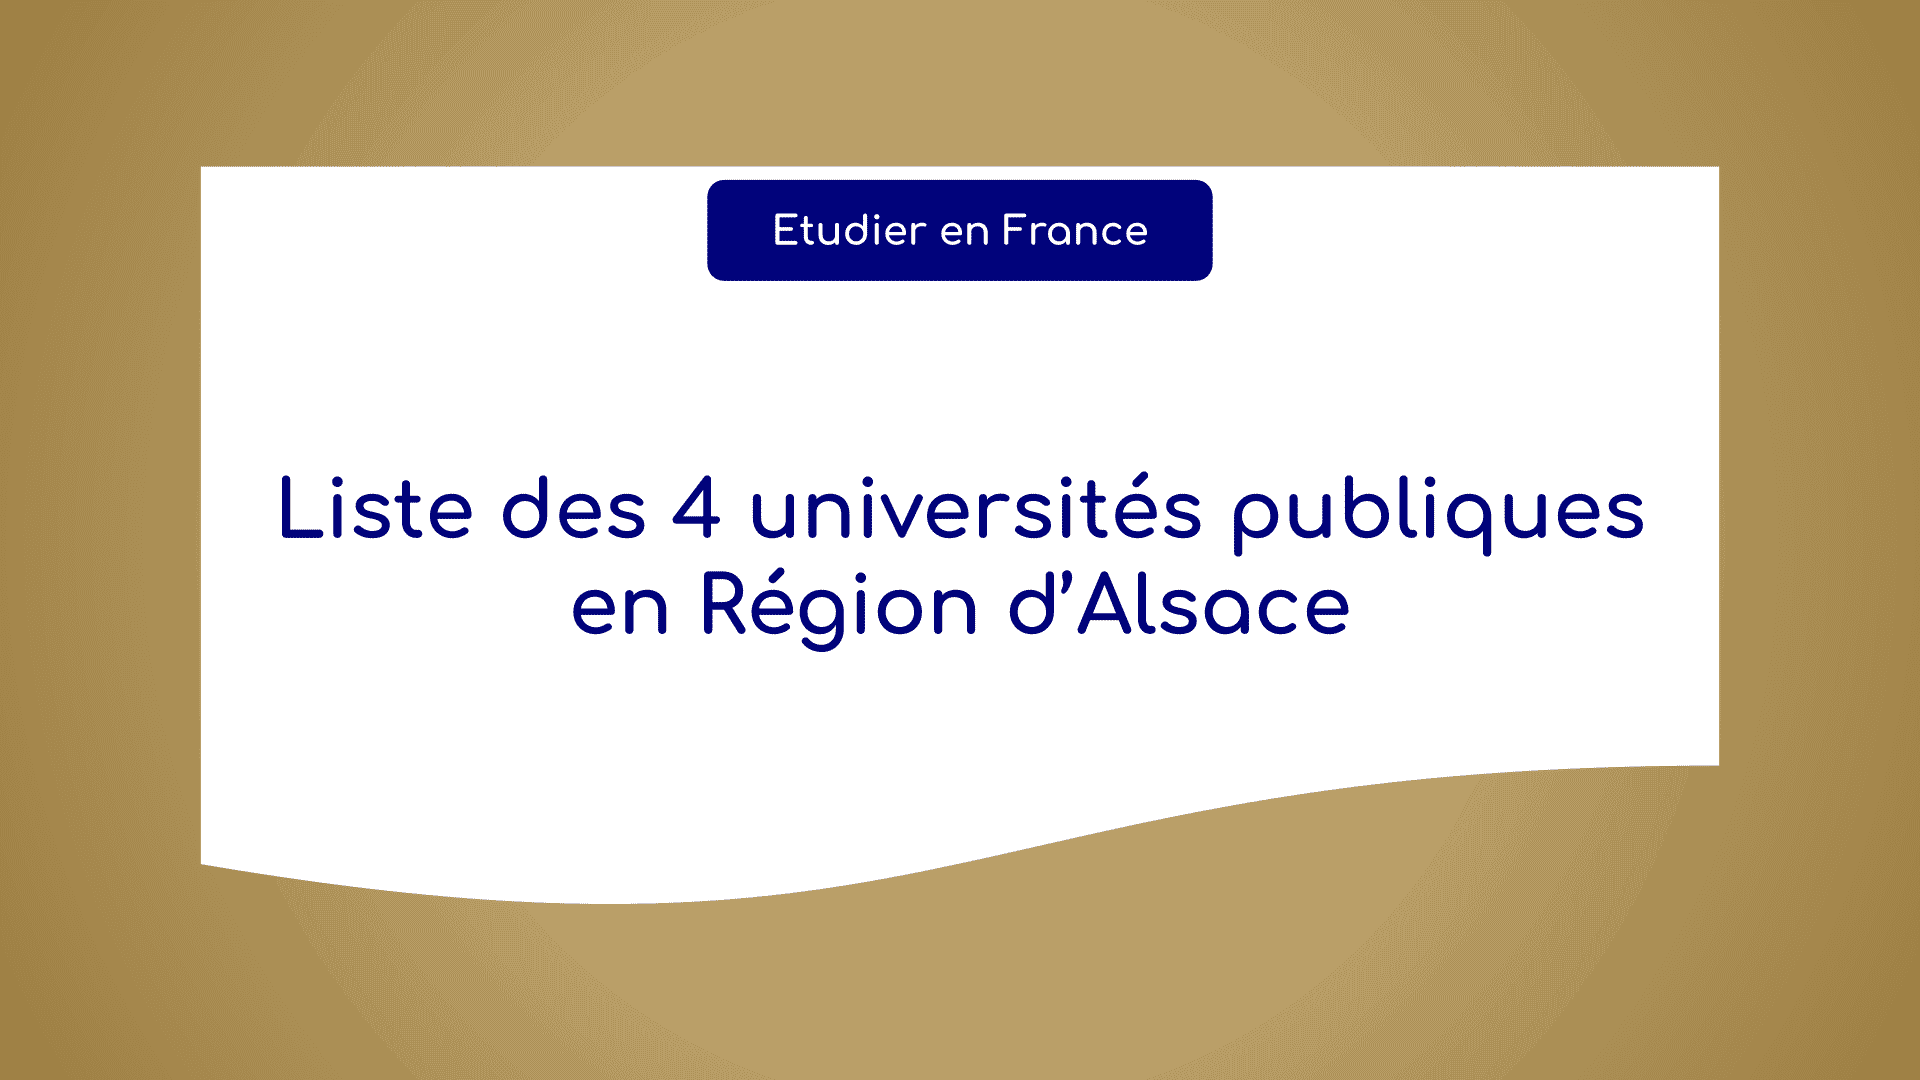 universités publiques en Région d’Alsace